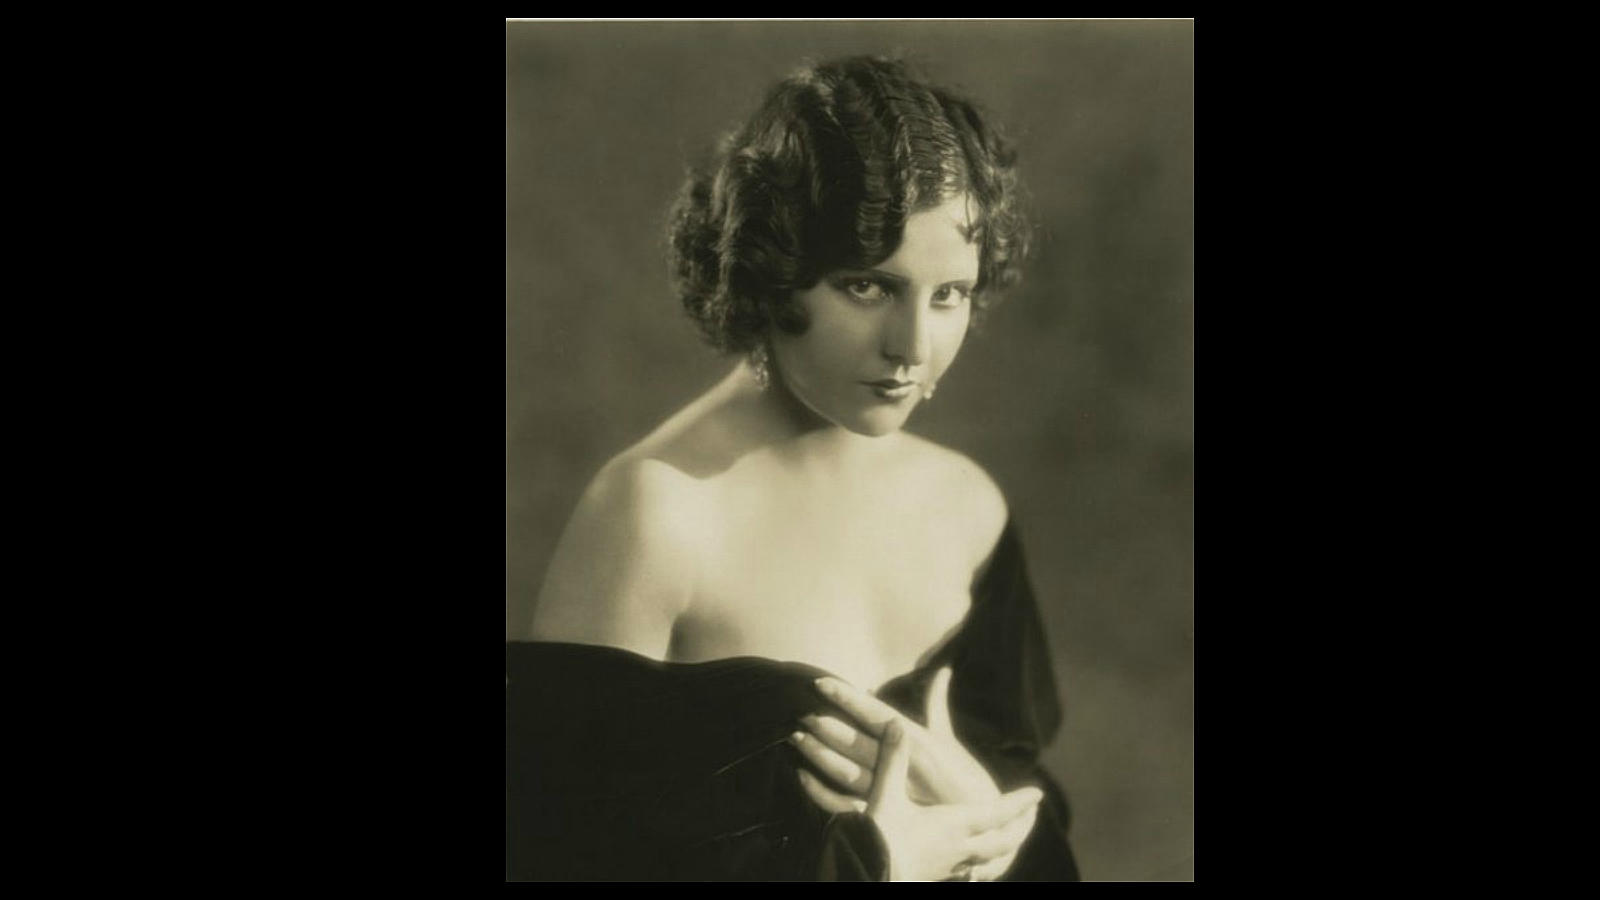 En 1932, la barcelonesa María Alba firmó un contrato con Fox y empezó a trabajar en películas mudas encasillada en papeles secundarios de fogosa latina. Cuando llegó el cine sonoro, cumplió satisfactoriamente con las audiciones y, además, rodó en Hollywood películas en castellano